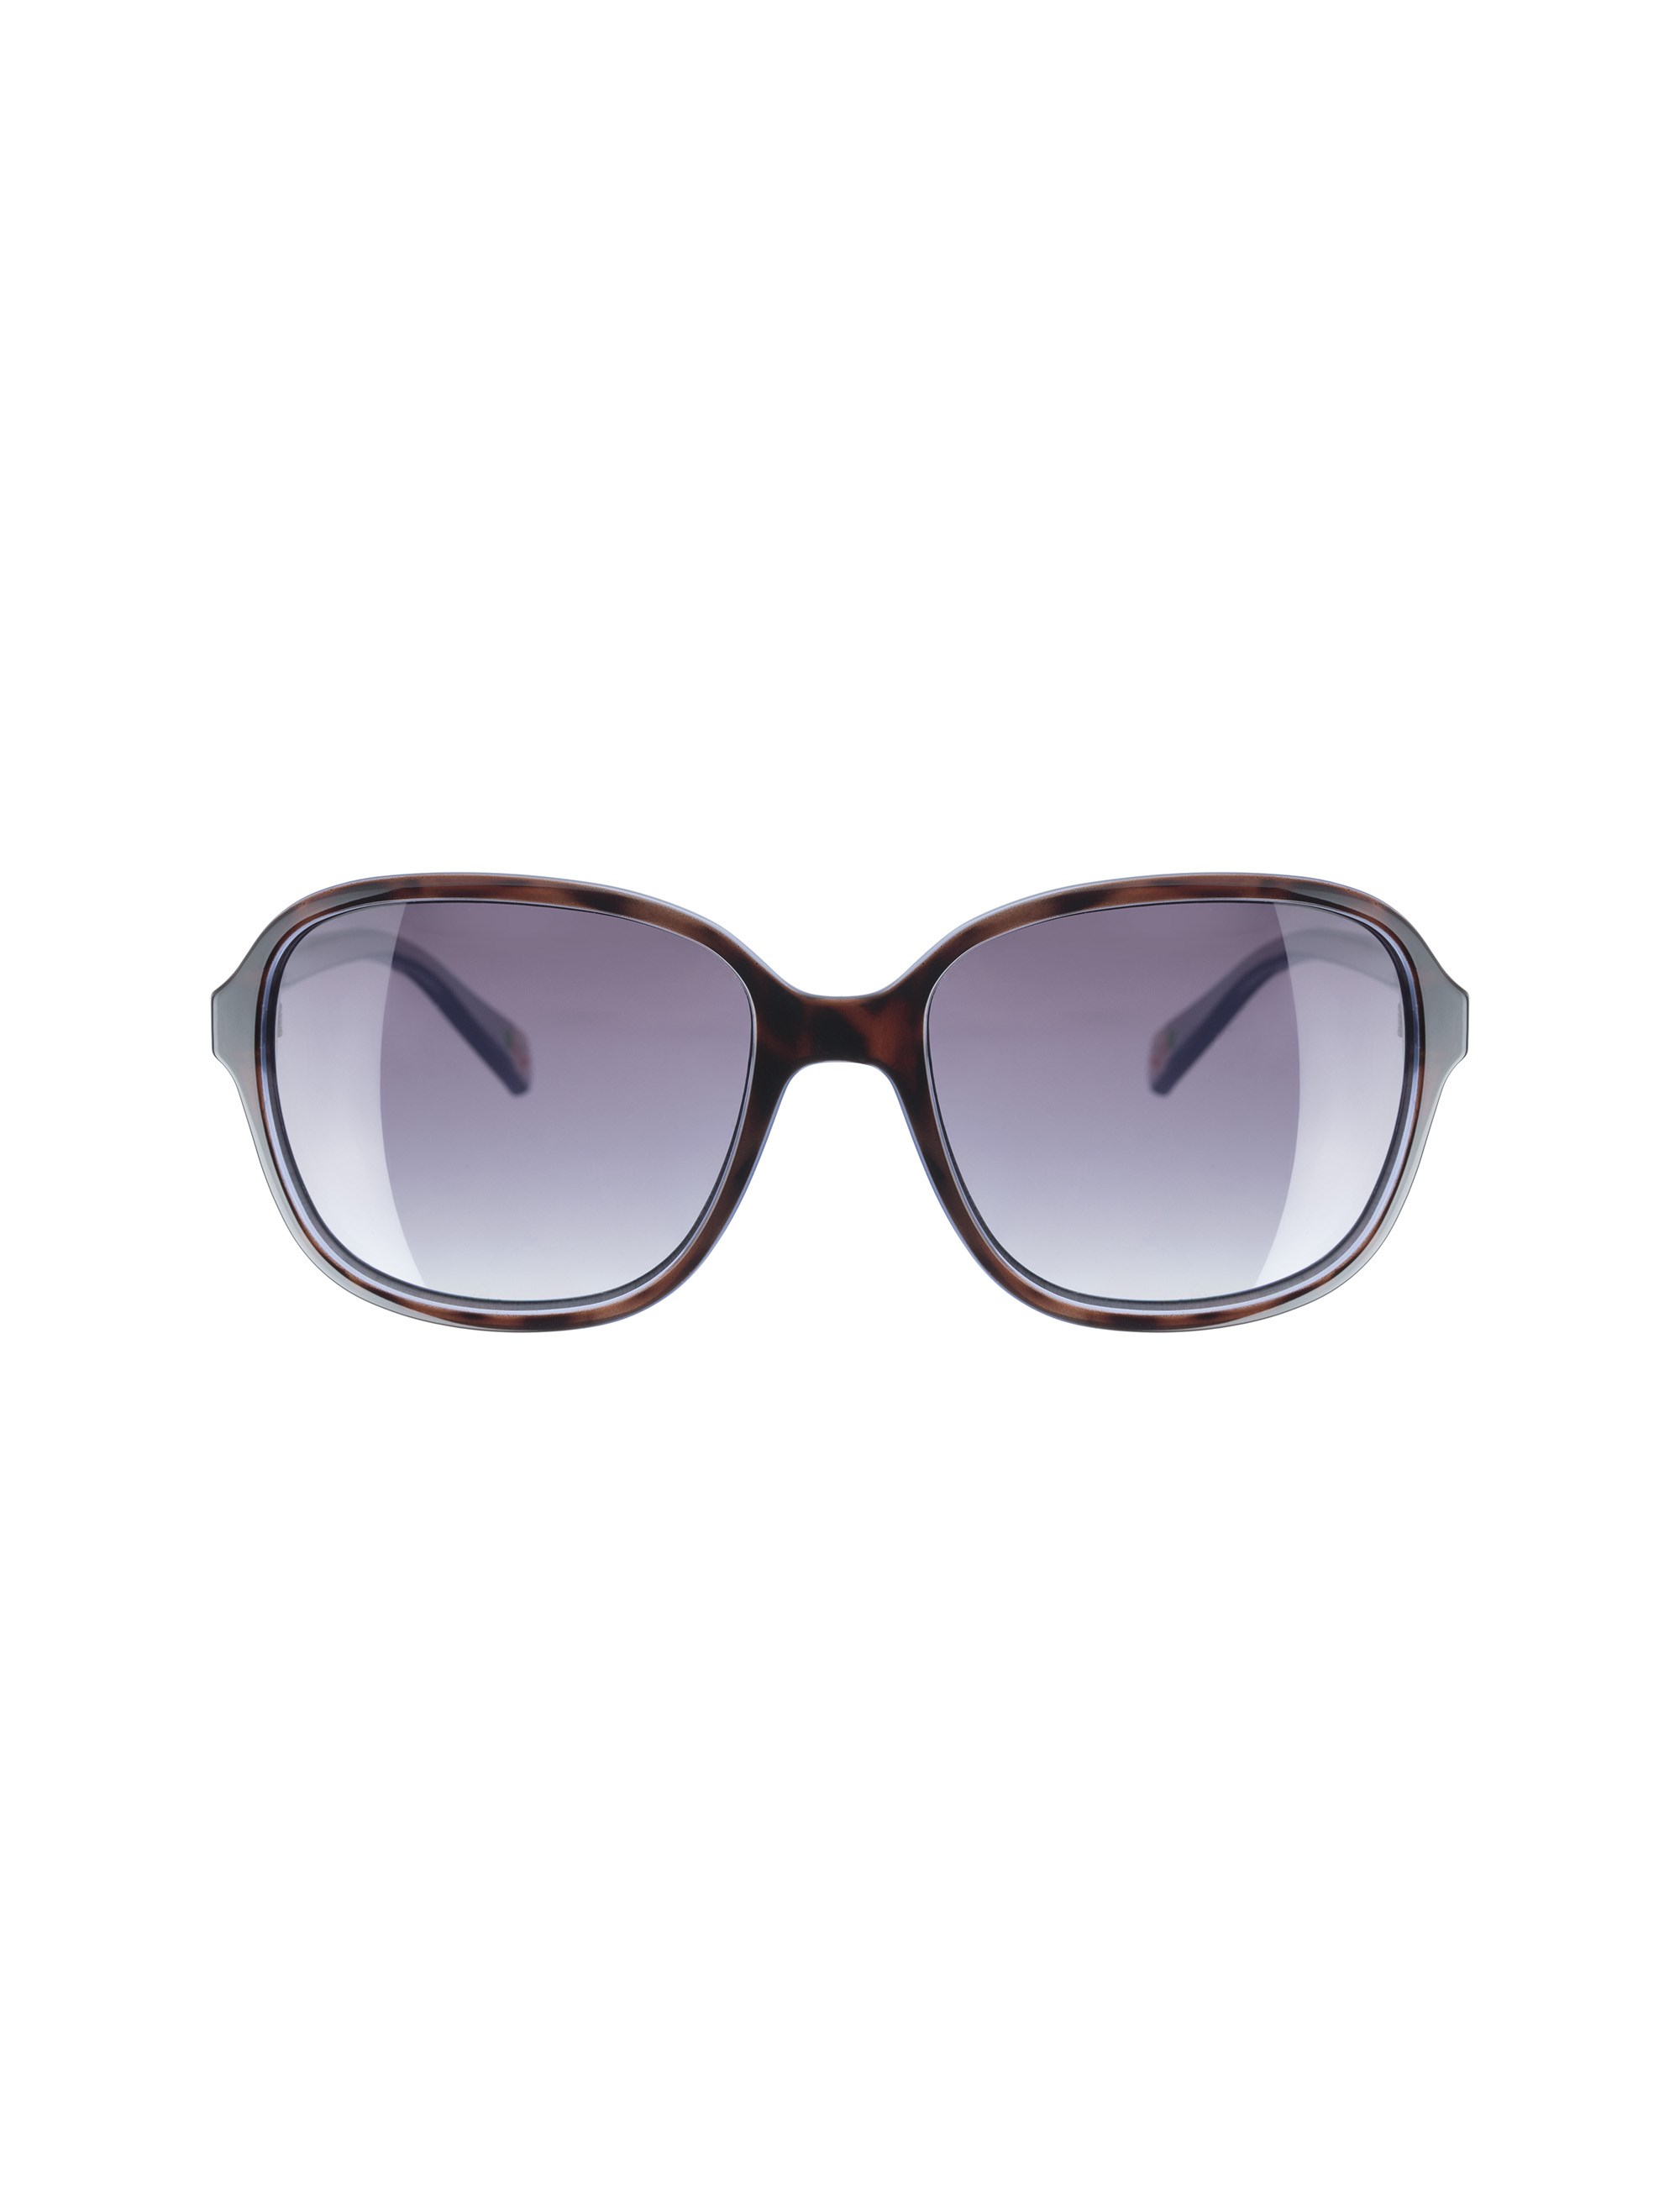 عینک آفتابی زنانه کت کیتسون مدل CK501010455 - قهوه ای و آبی - 2